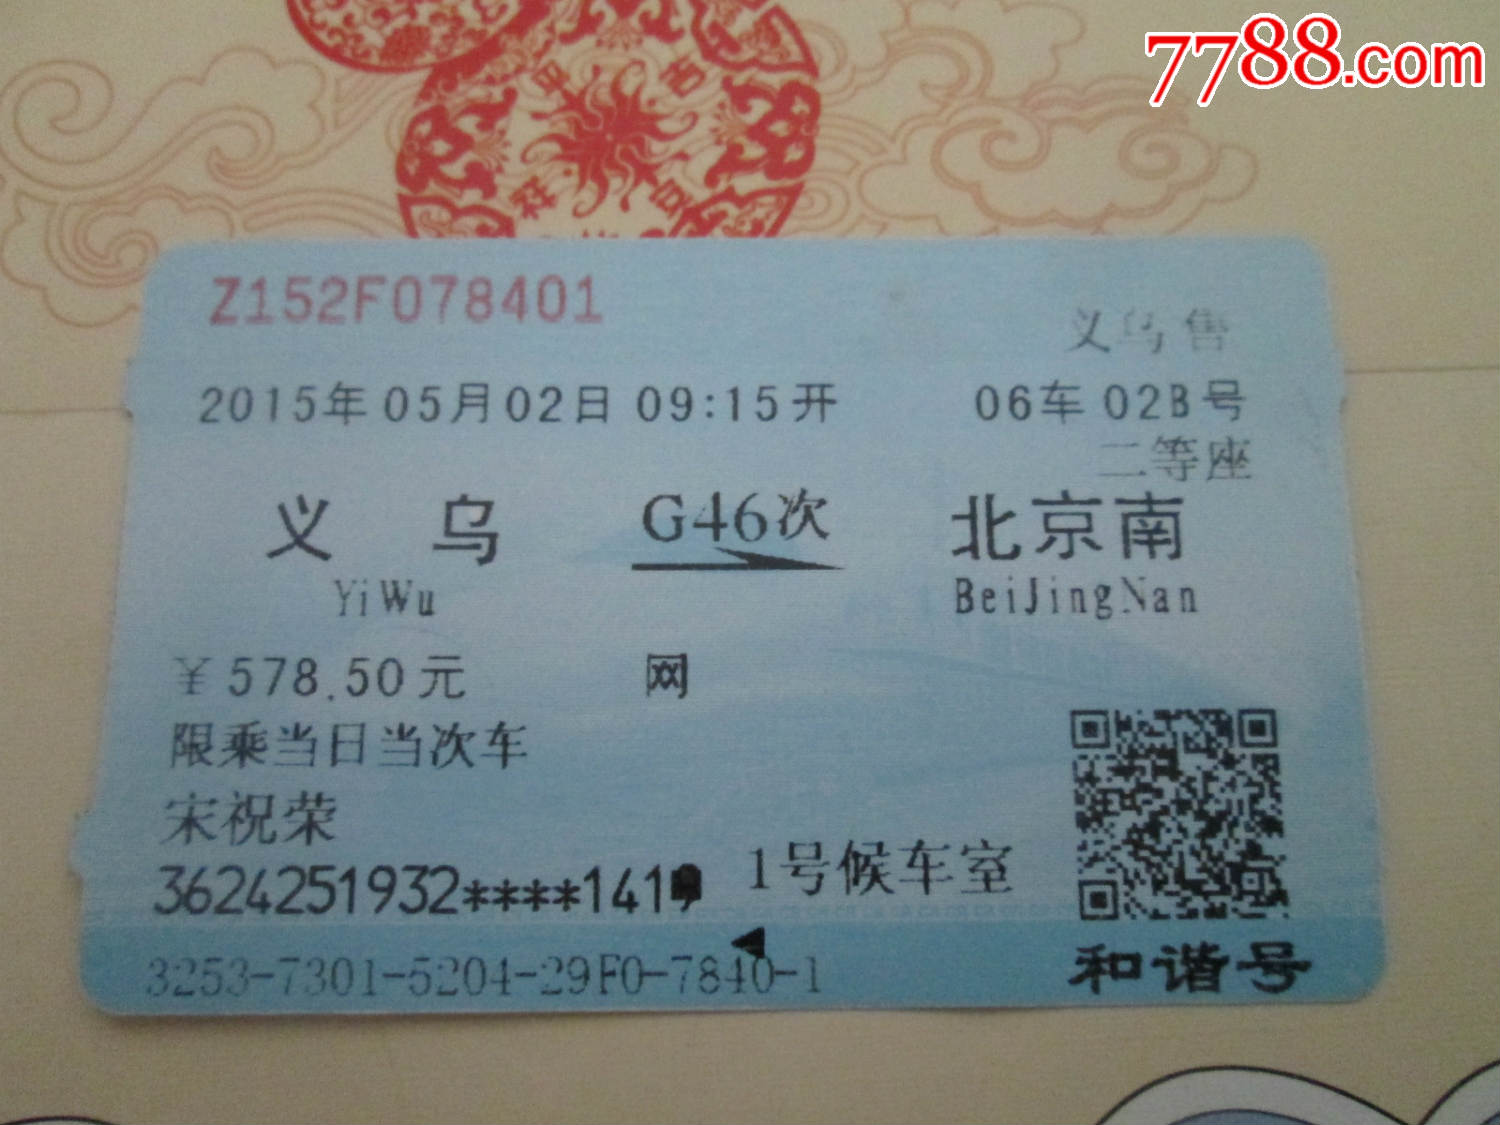 日照一北京火车票多少钱 日照至北京火车时间表z160